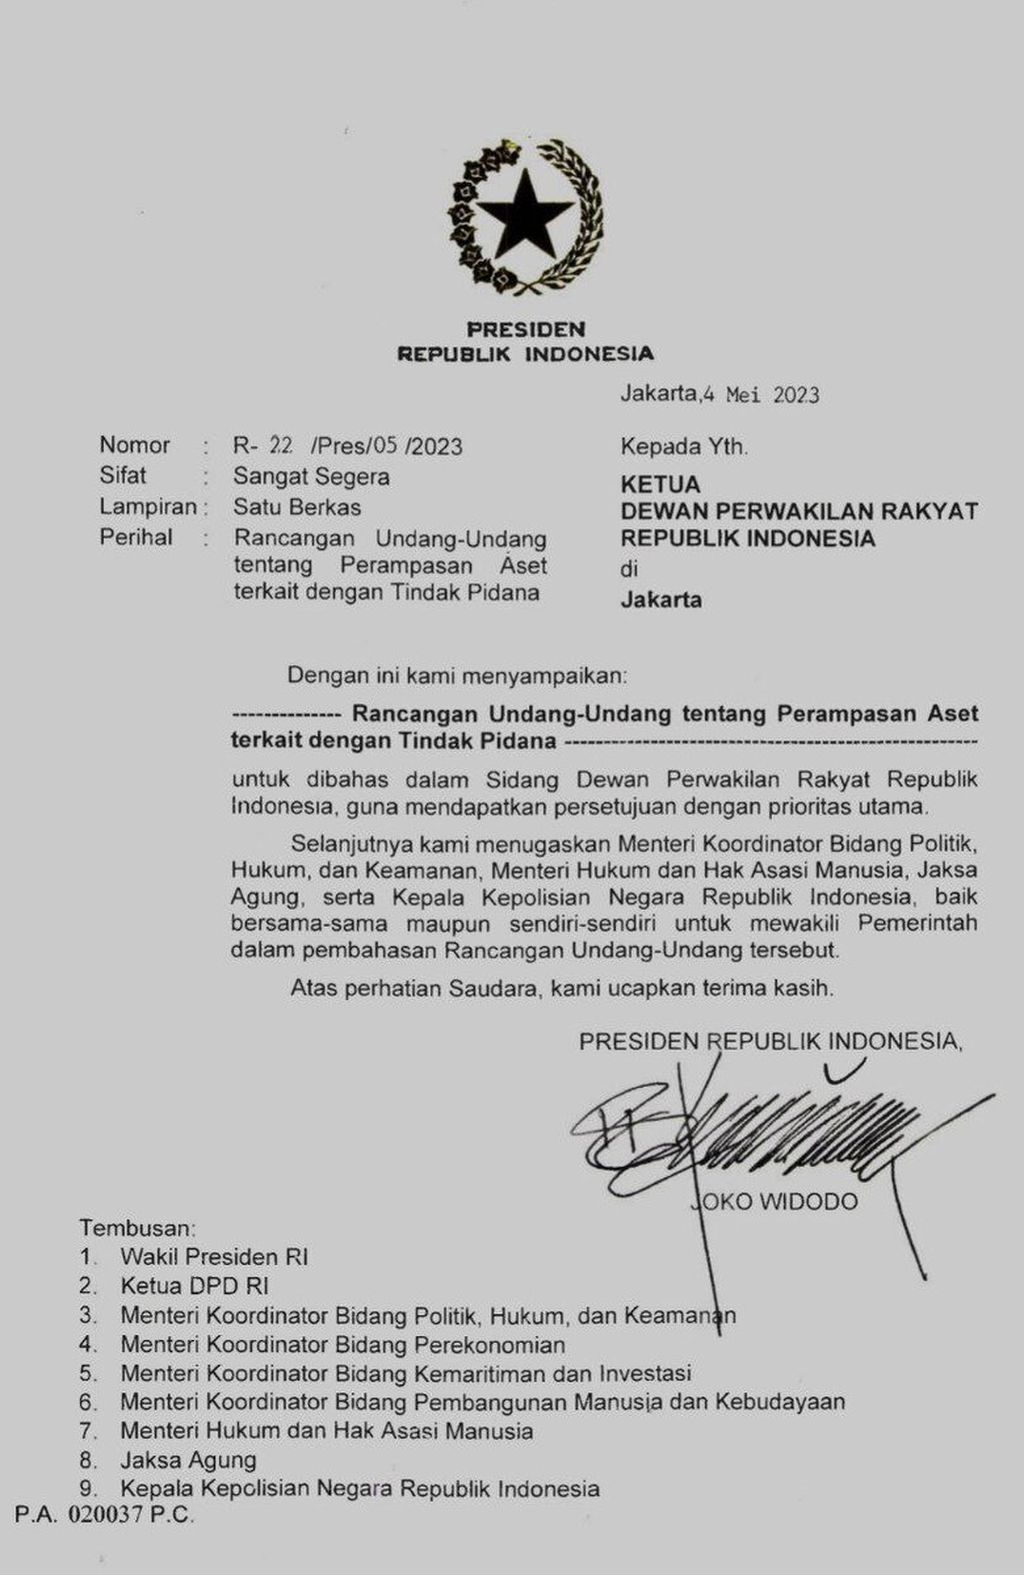 Hasil tangkapan layar surat presiden (surpres) yang dikirimkan pemerintah kepada DPR sebagai permintaan untuk membahas bersama RUU Perampasan Aset. 